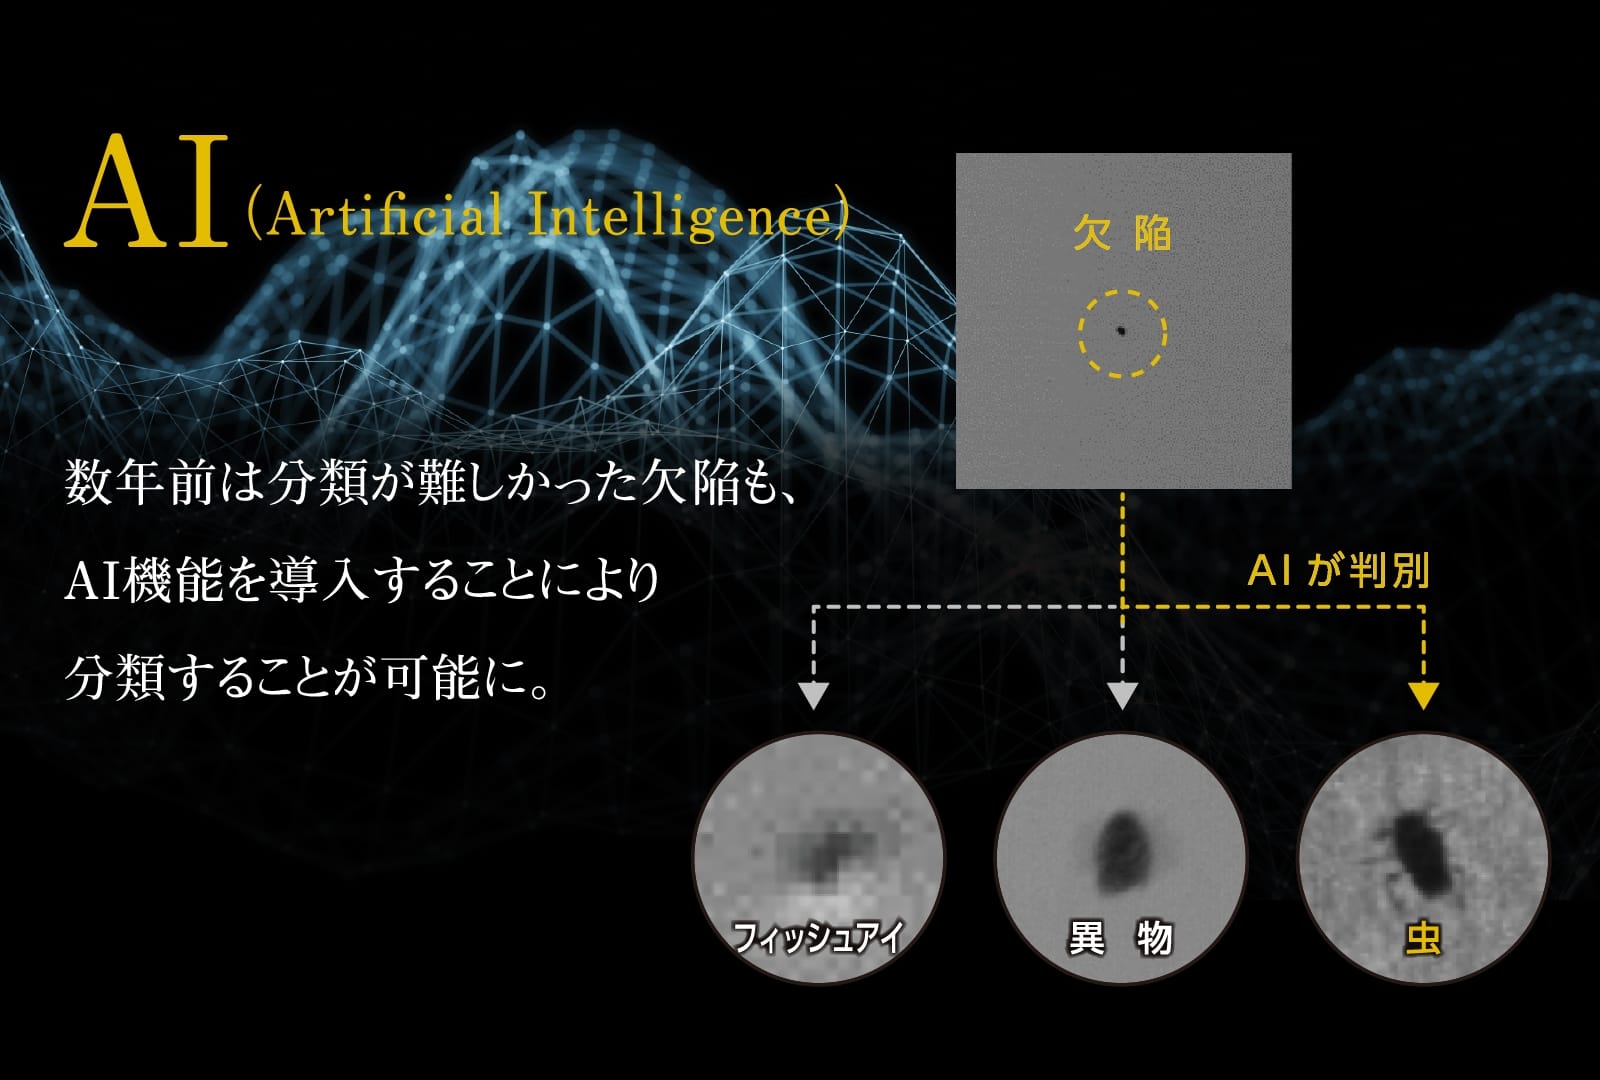 AI 数年前は分類が難しかった欠陥も、AI機能を導入することにより分類することが可能に。